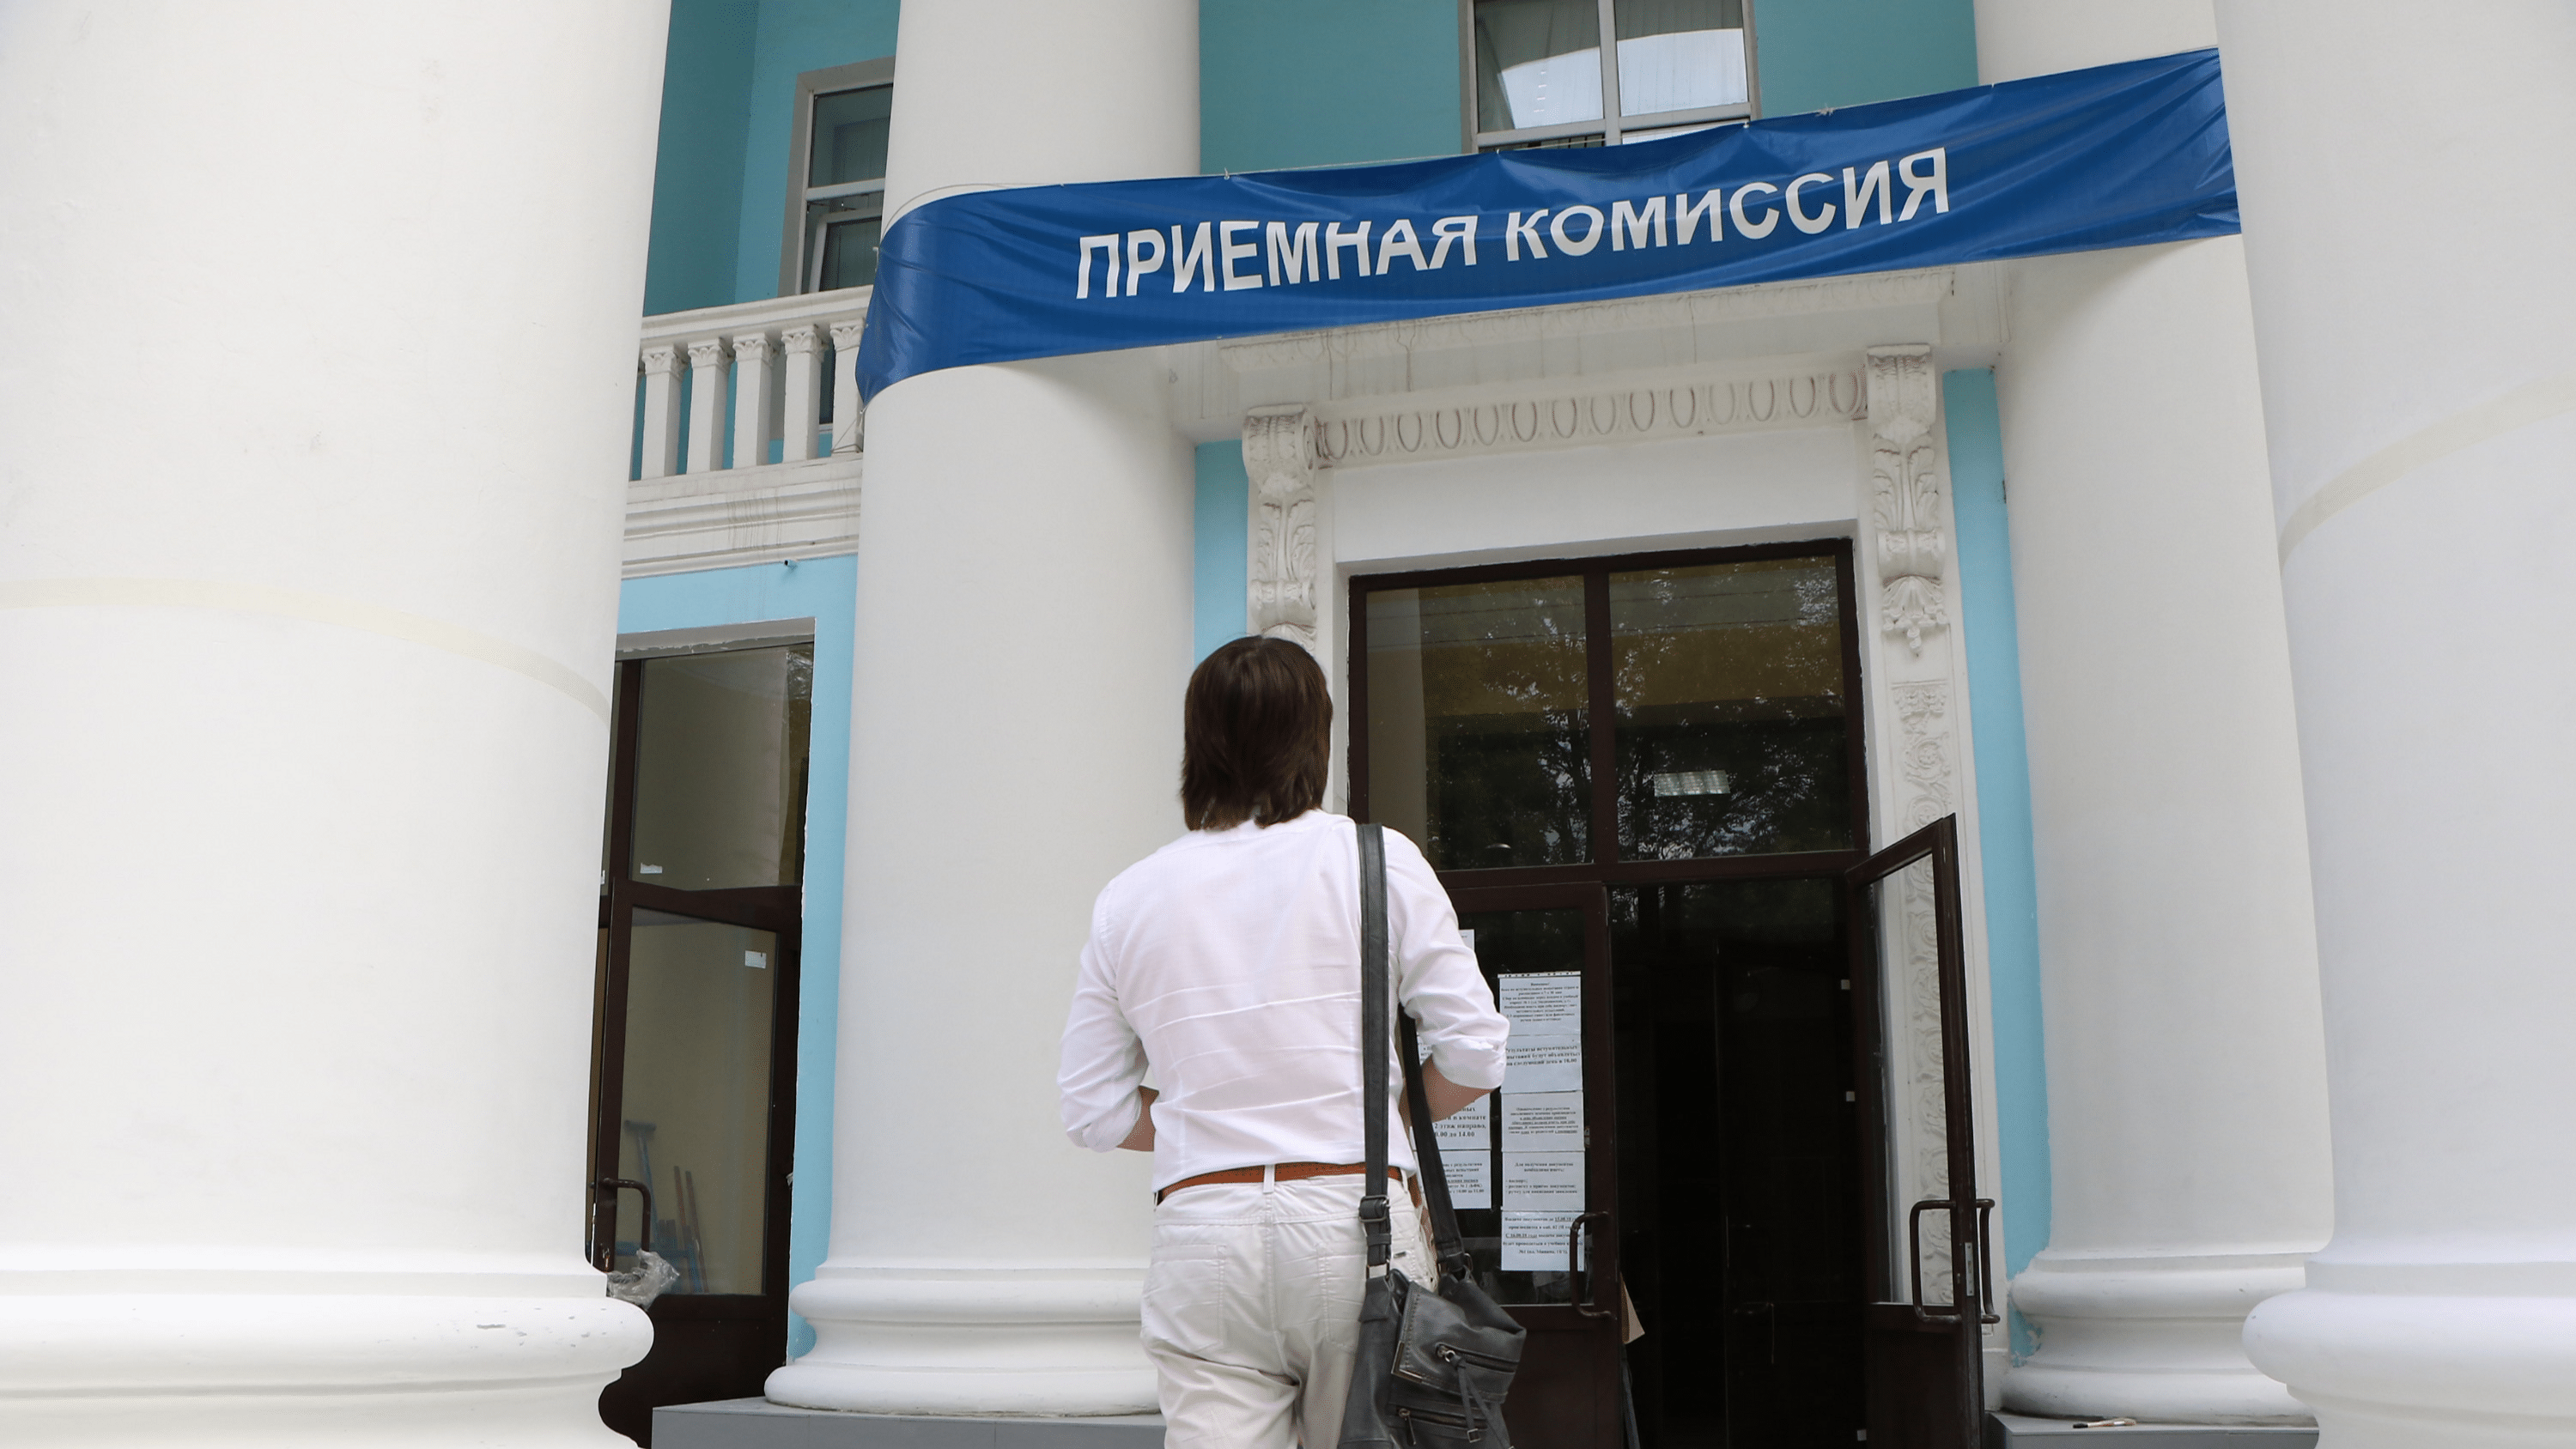 Нижегородскую школьницу лишили стипендии. Стипендии в Нижнем Новгороде.